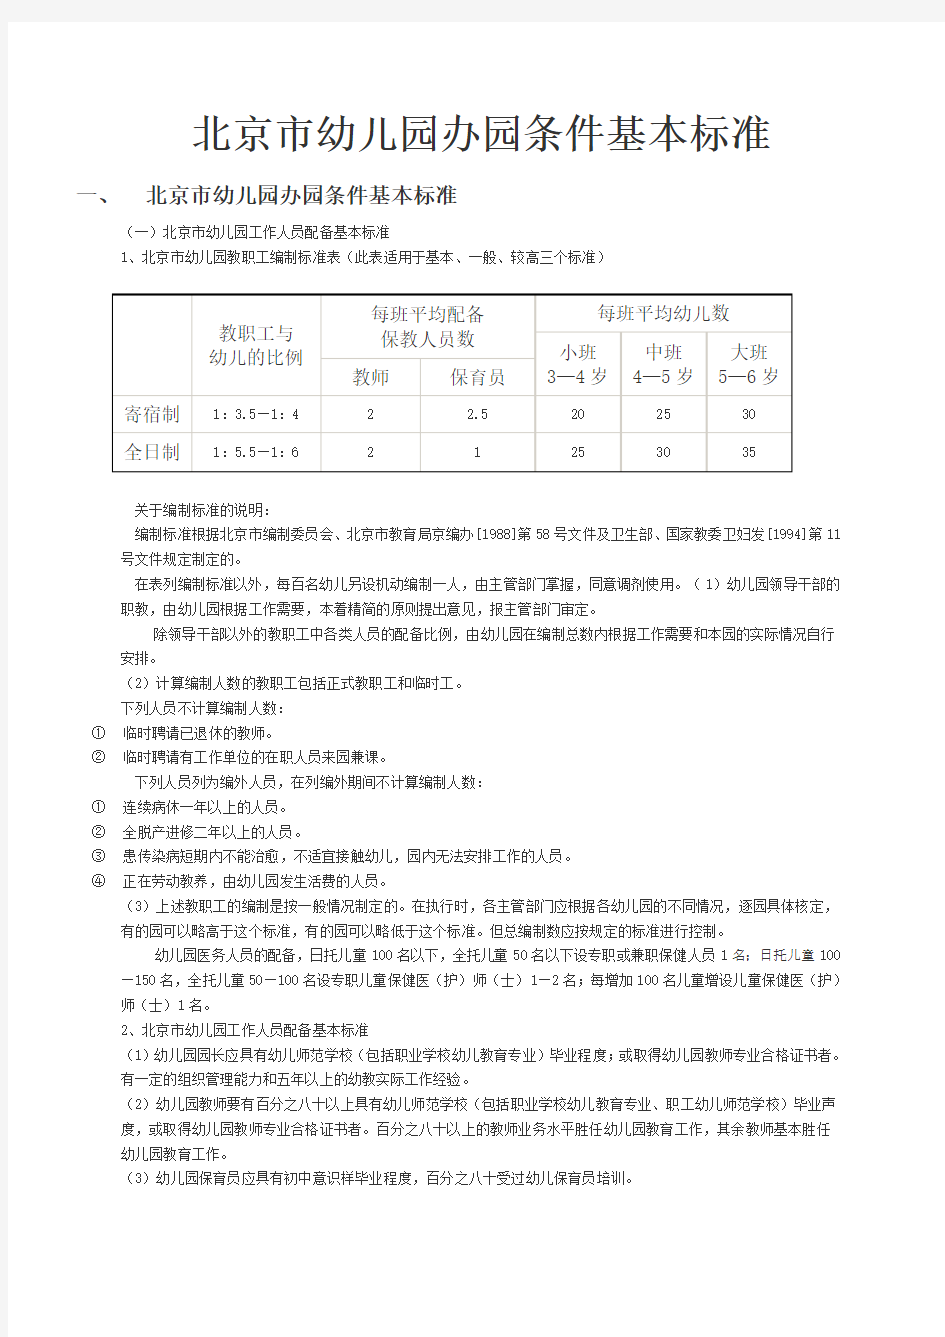 北京市幼儿园办园条件基本标准讲解